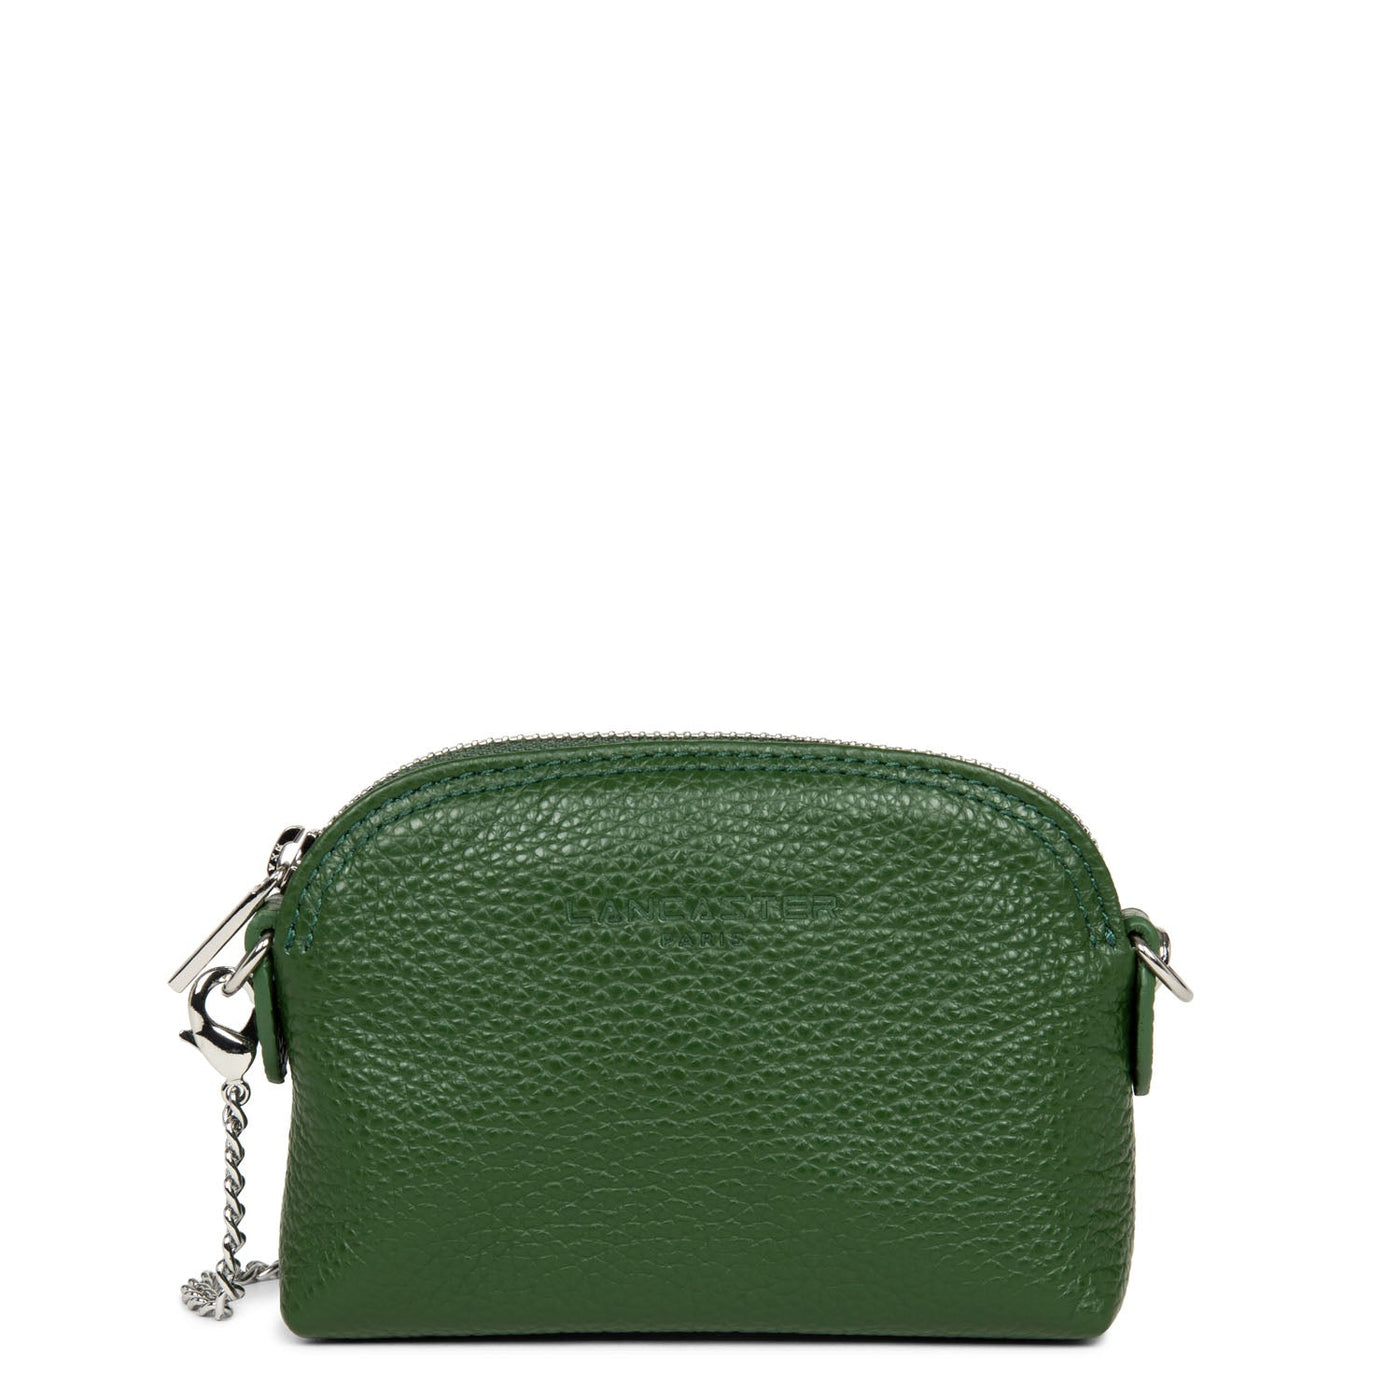 small coin purse - foulonné pm #couleur_vert-pin